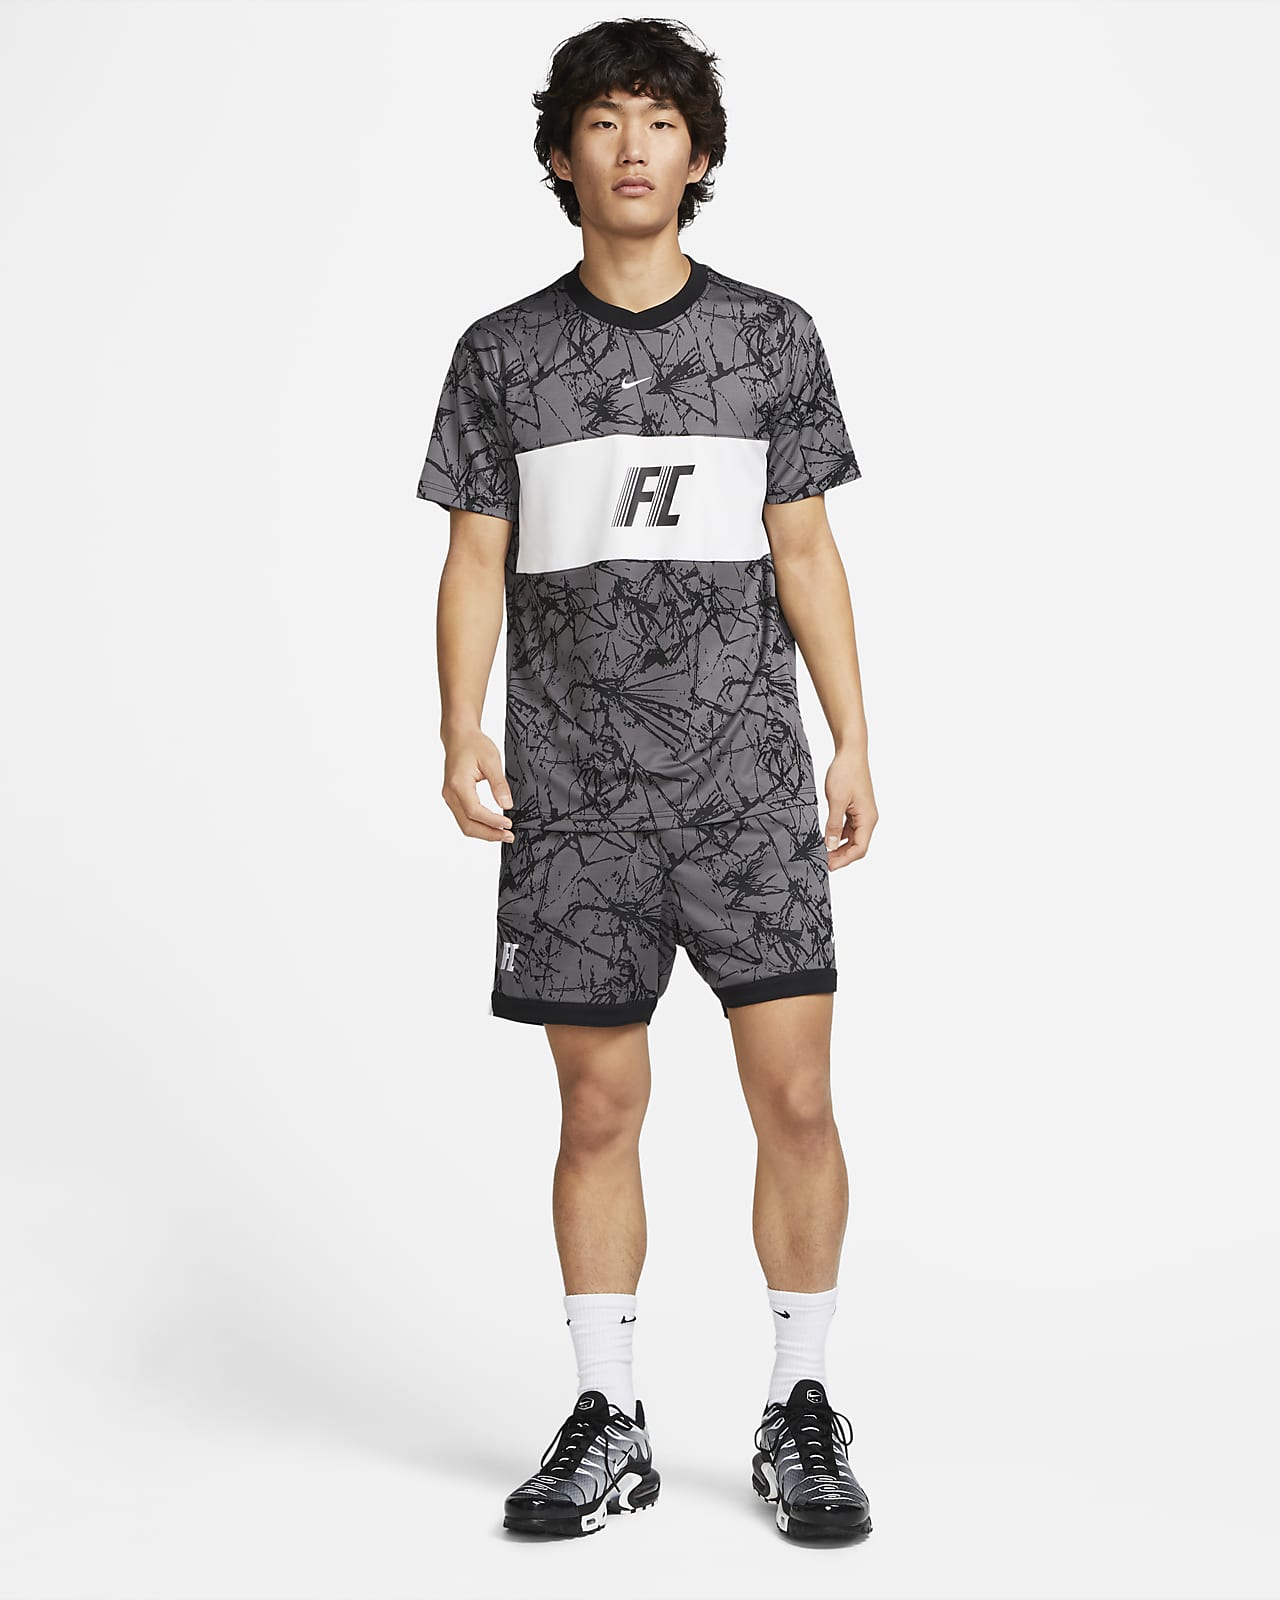 NIKE公式】ナイキ Dri-FIT F.C. メンズ 13cm サッカーショートパンツ